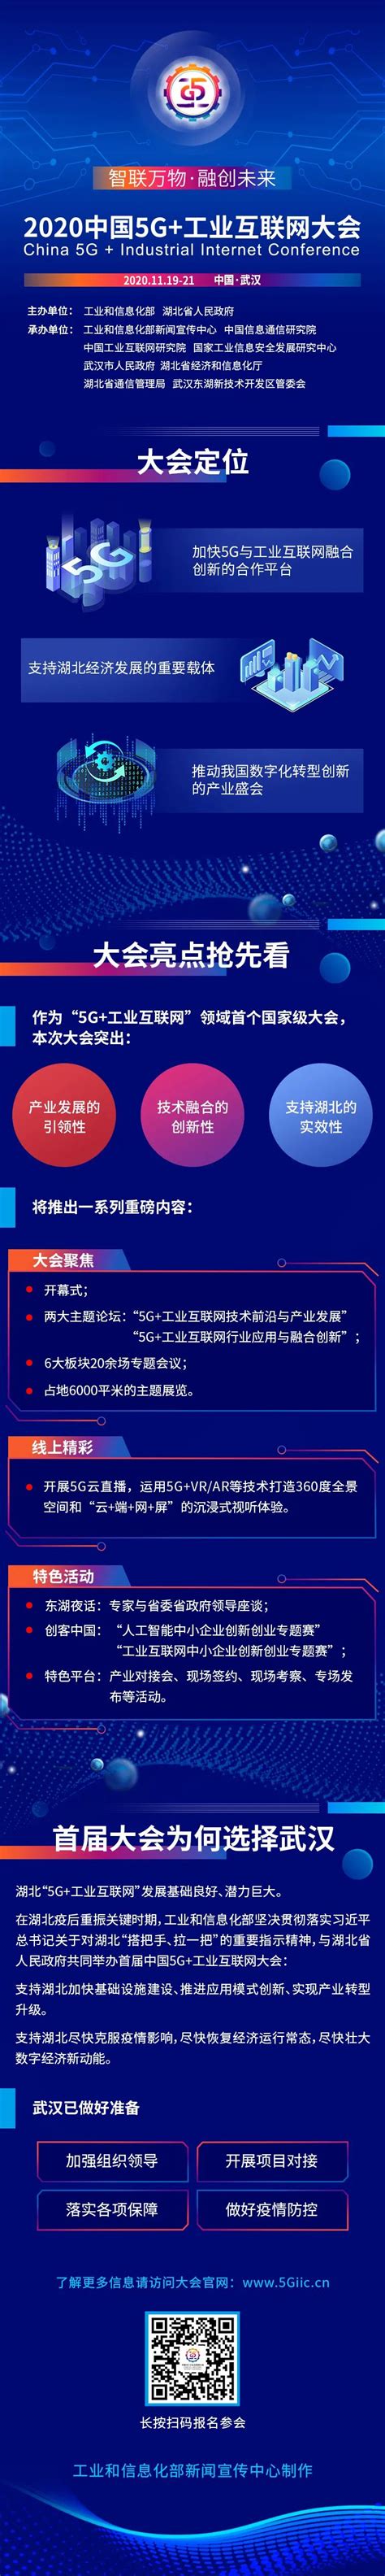 四川省首个5G综合应用示范网规模建成 成都5G全国首发 - 成都 - 无限成都-成都市广播电视台官方网站